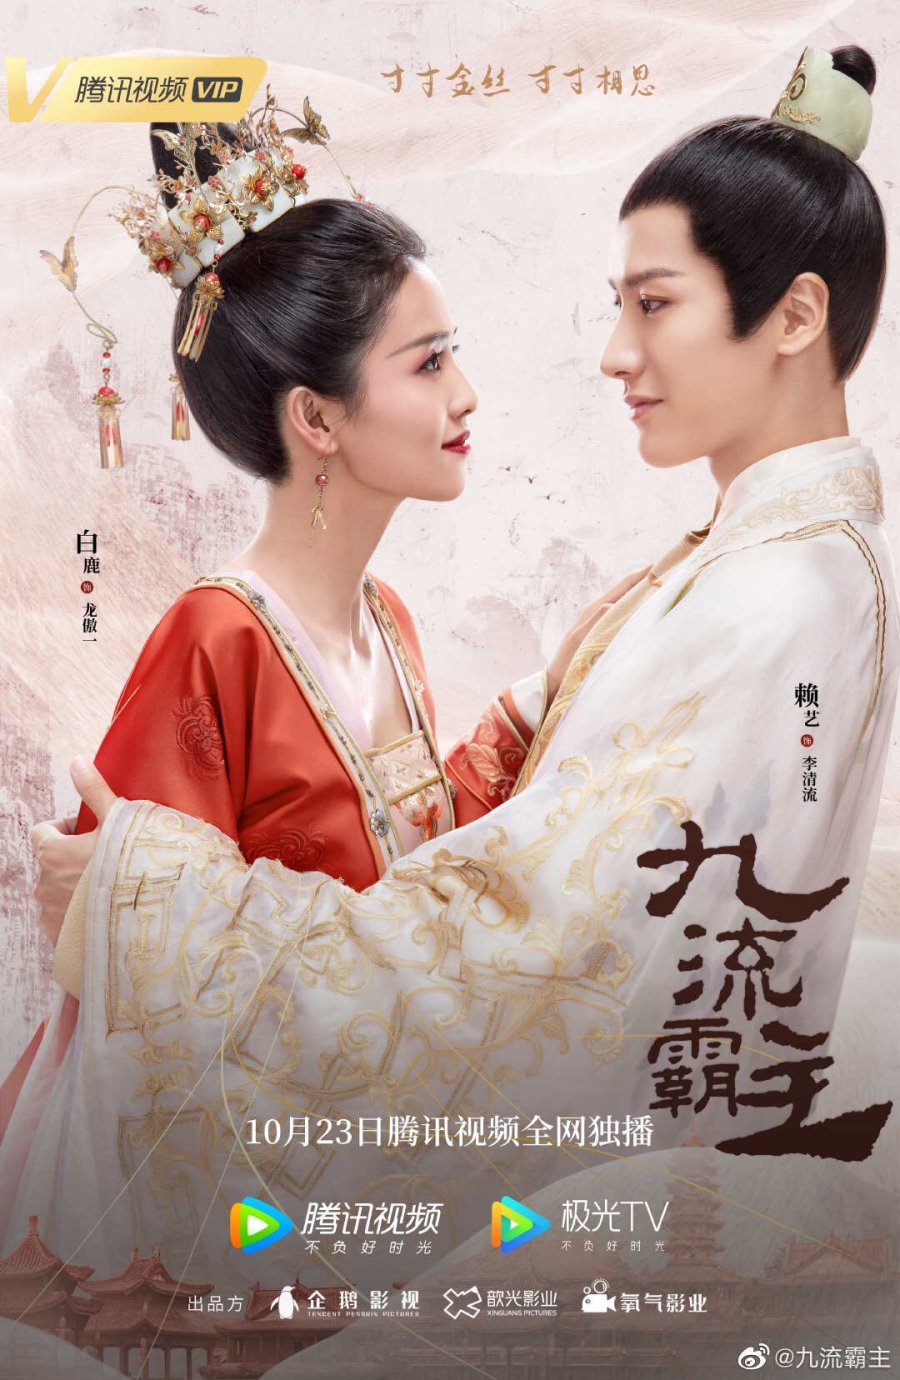 image poster from imdb - ​Jiu Liu Overlord (2020)